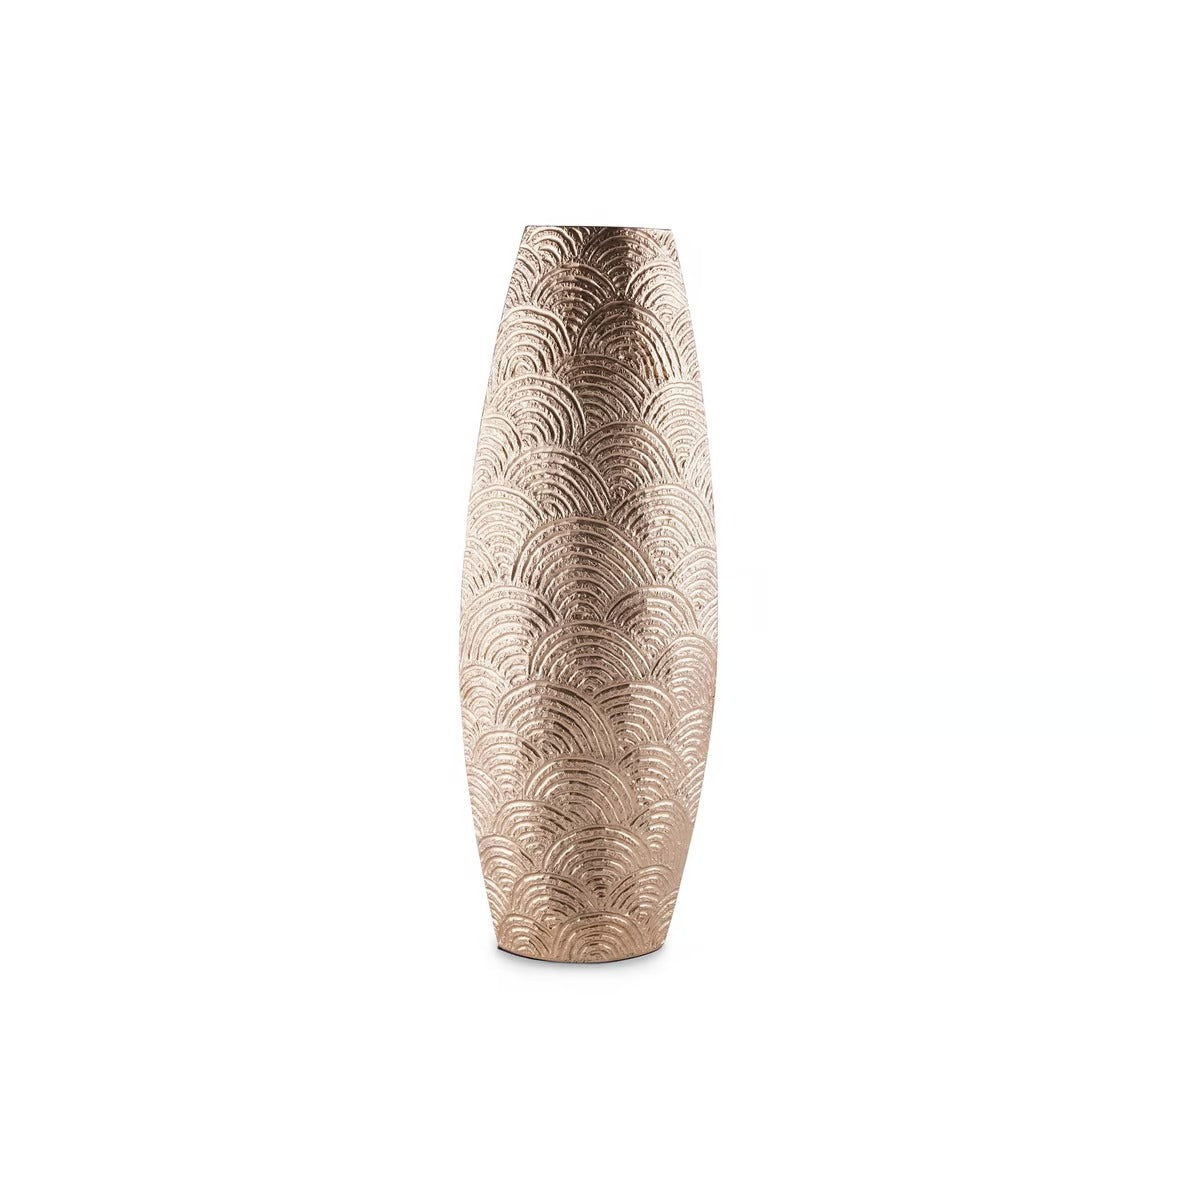 Triss Decor Vase 21x13.5x57.5cm - Gold